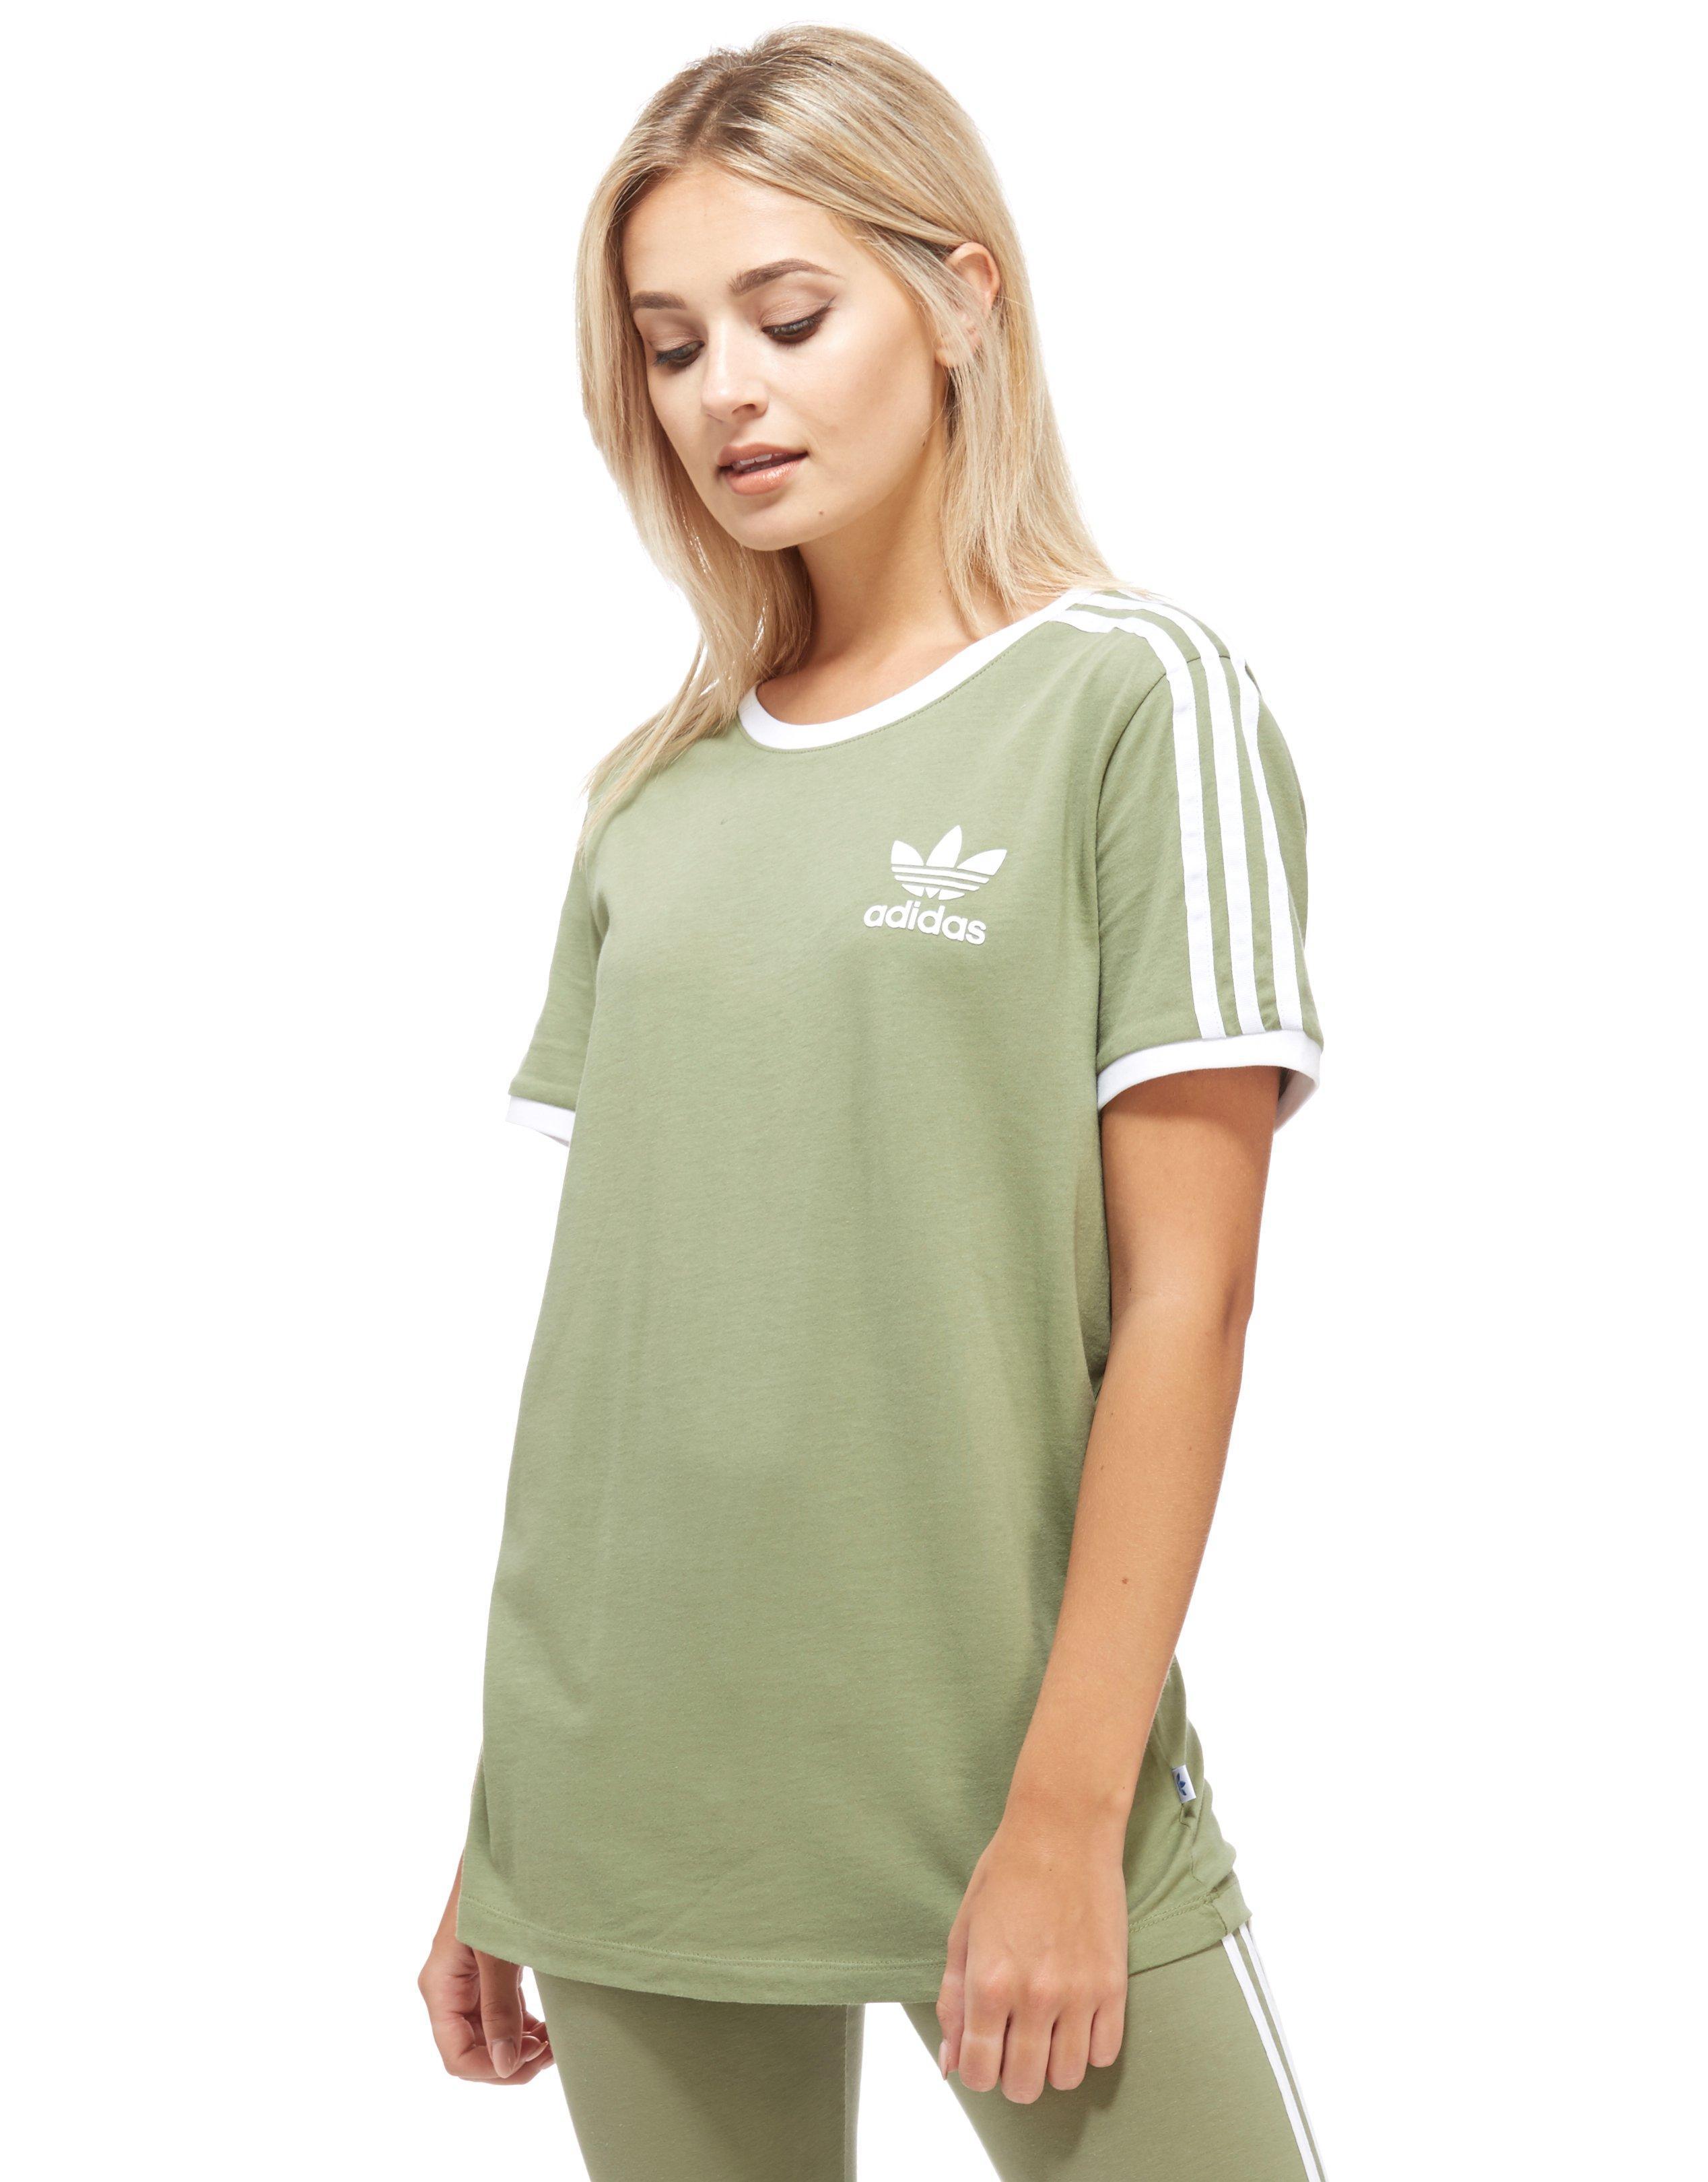 Shopping Light Green Adidas Shirt